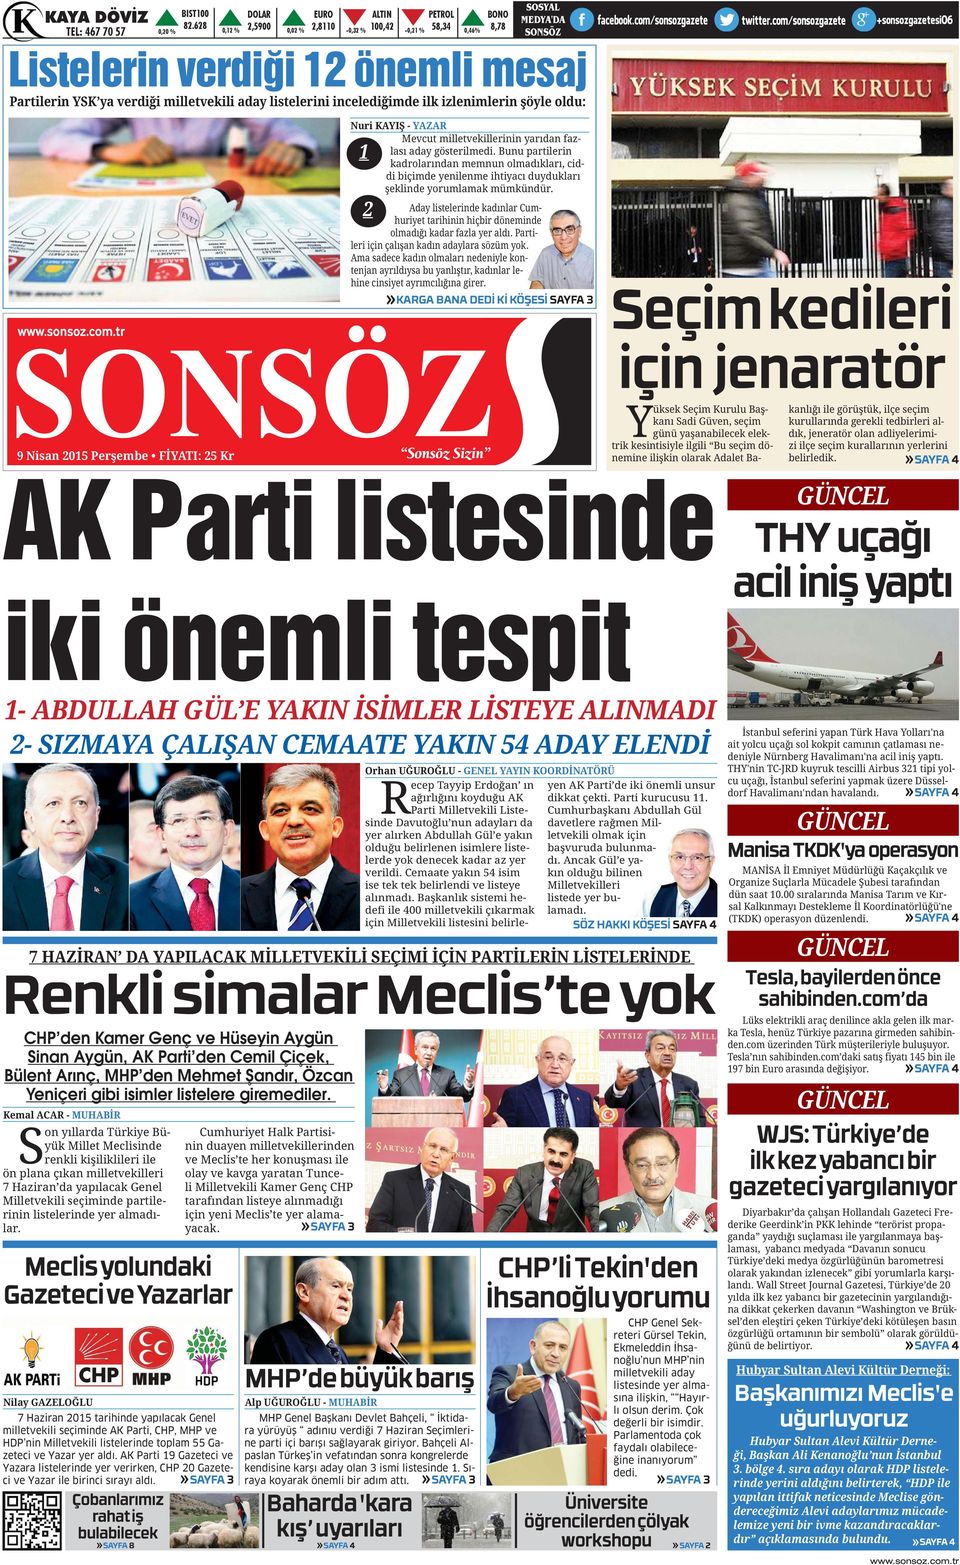 Çiçek, Bülent Arınç, MHP den Mehmet Şandır, Özcan Yeniçeri gibi isimler listelere giremediler. Syük Millet Meclisinde Milletvekili seçiminde partile- lar. - - için yeni Meclis te yer alamayacak.